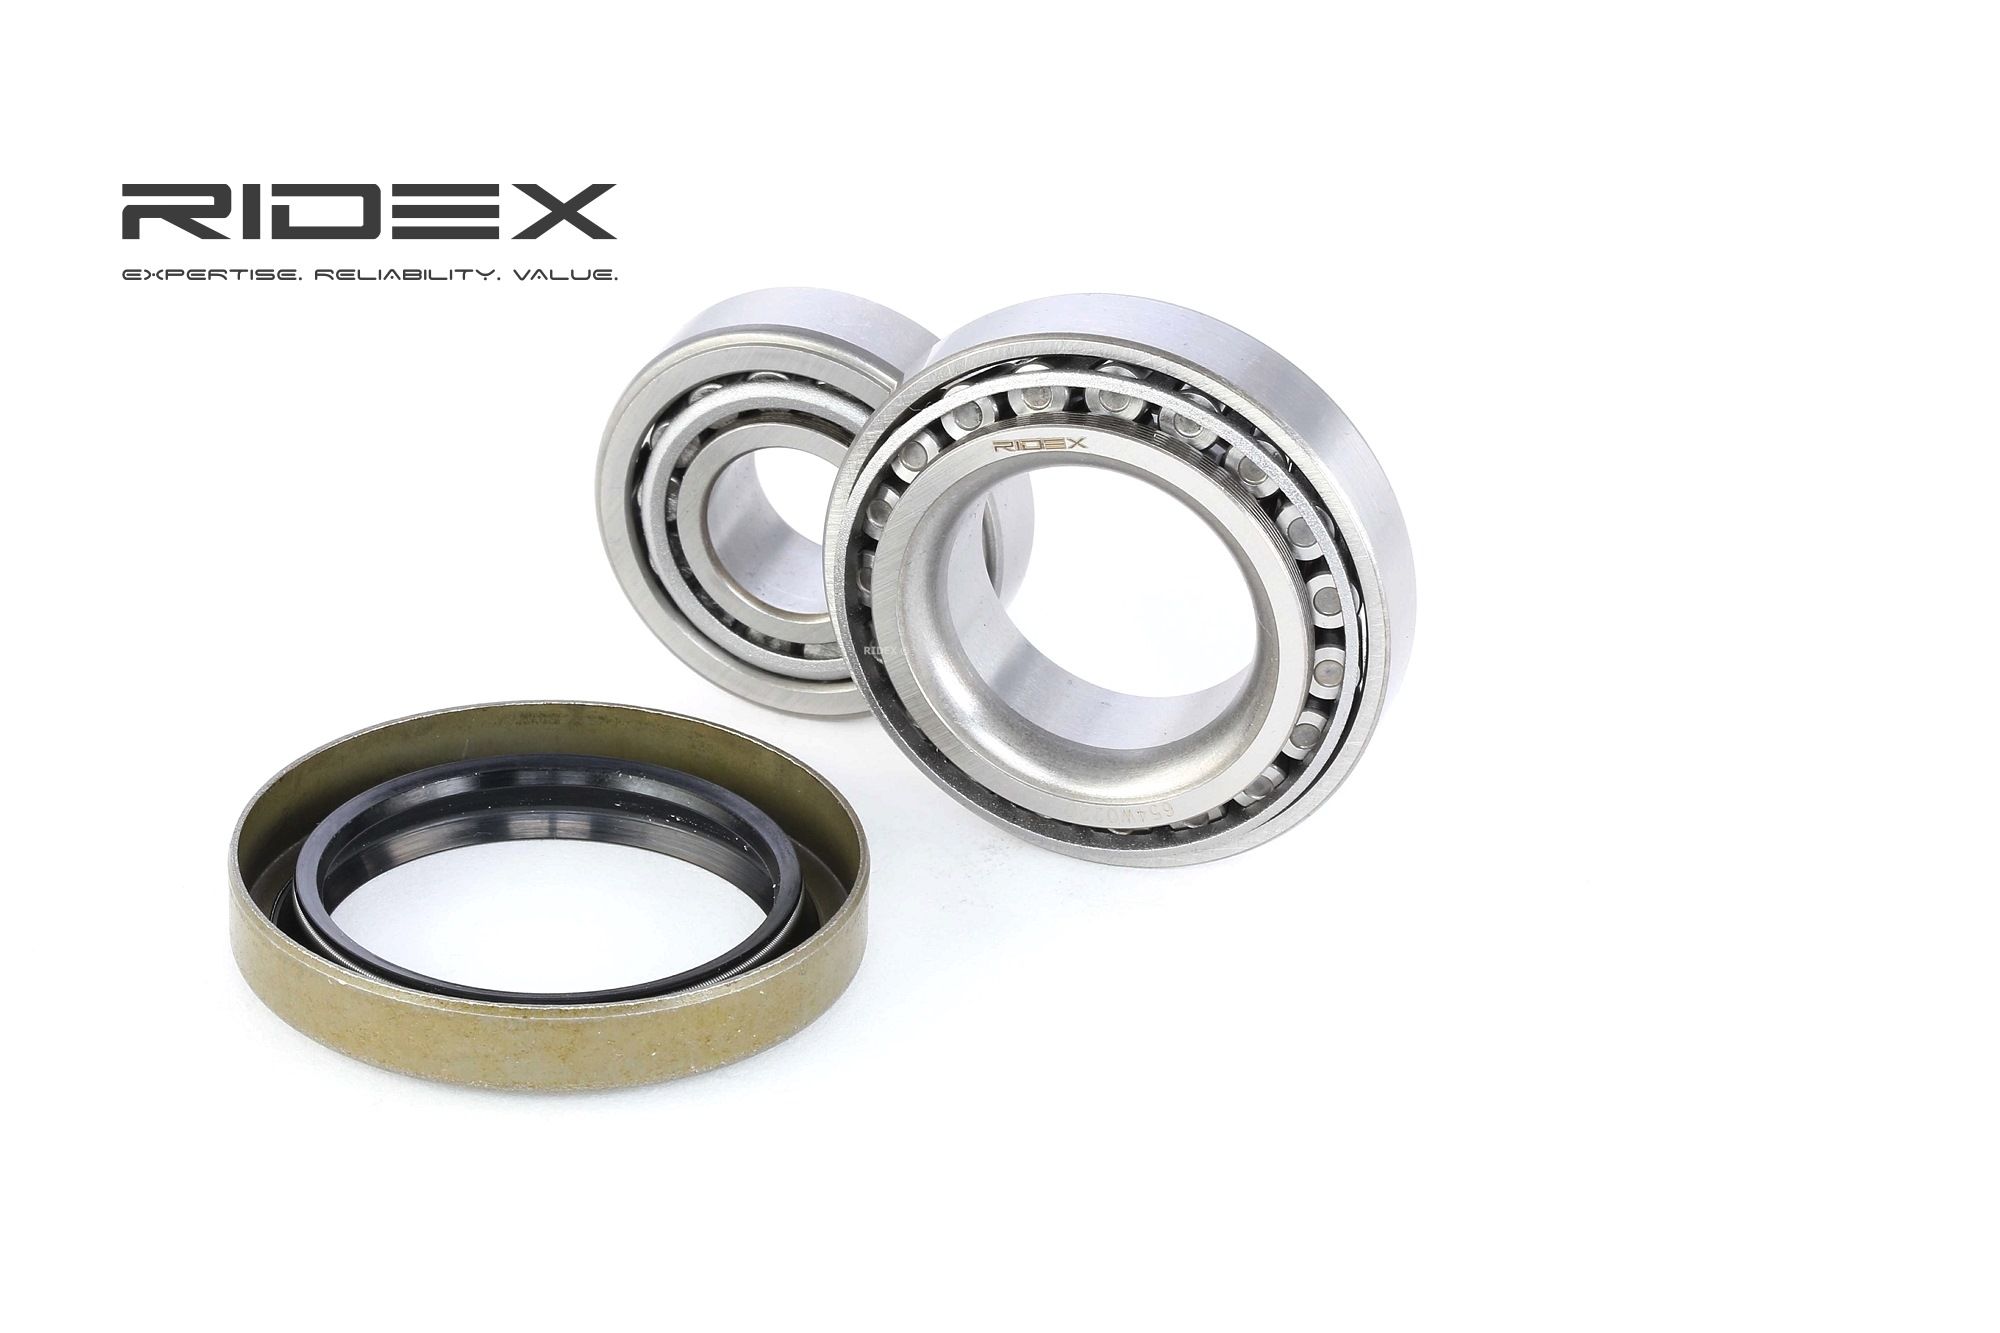 RIDEX 654W0220 Kit cuscinetto ruota economico nel negozio online